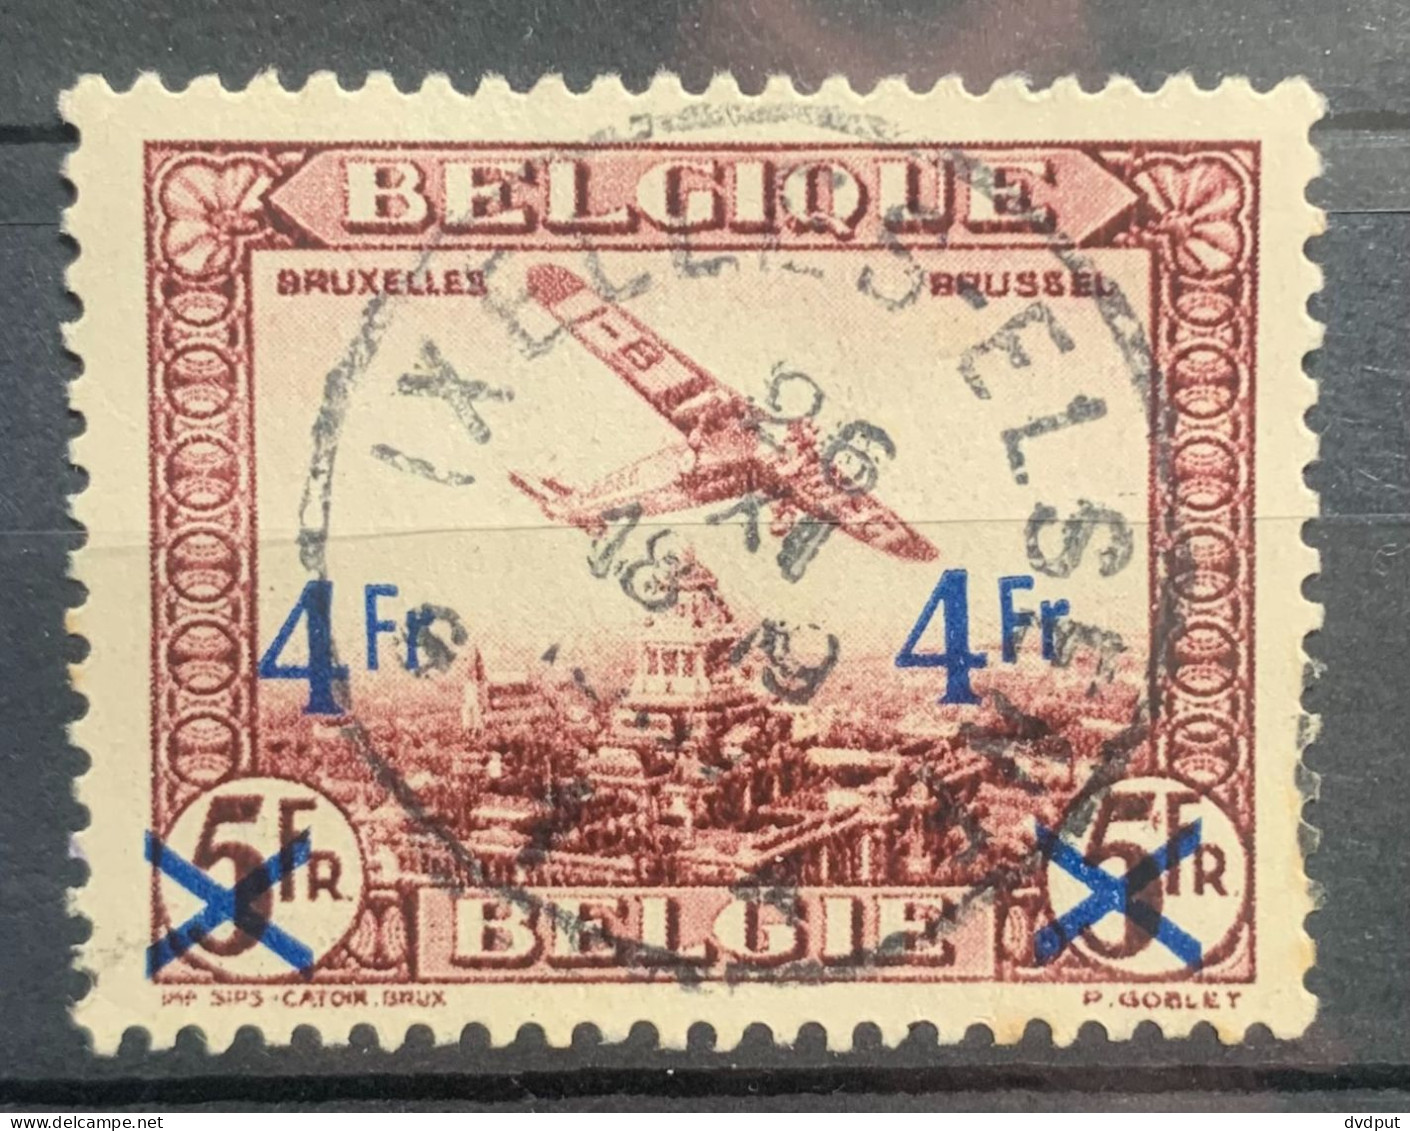 België - 1935, PA7, Gestempeld IXELLES/ELSENE - Gebraucht